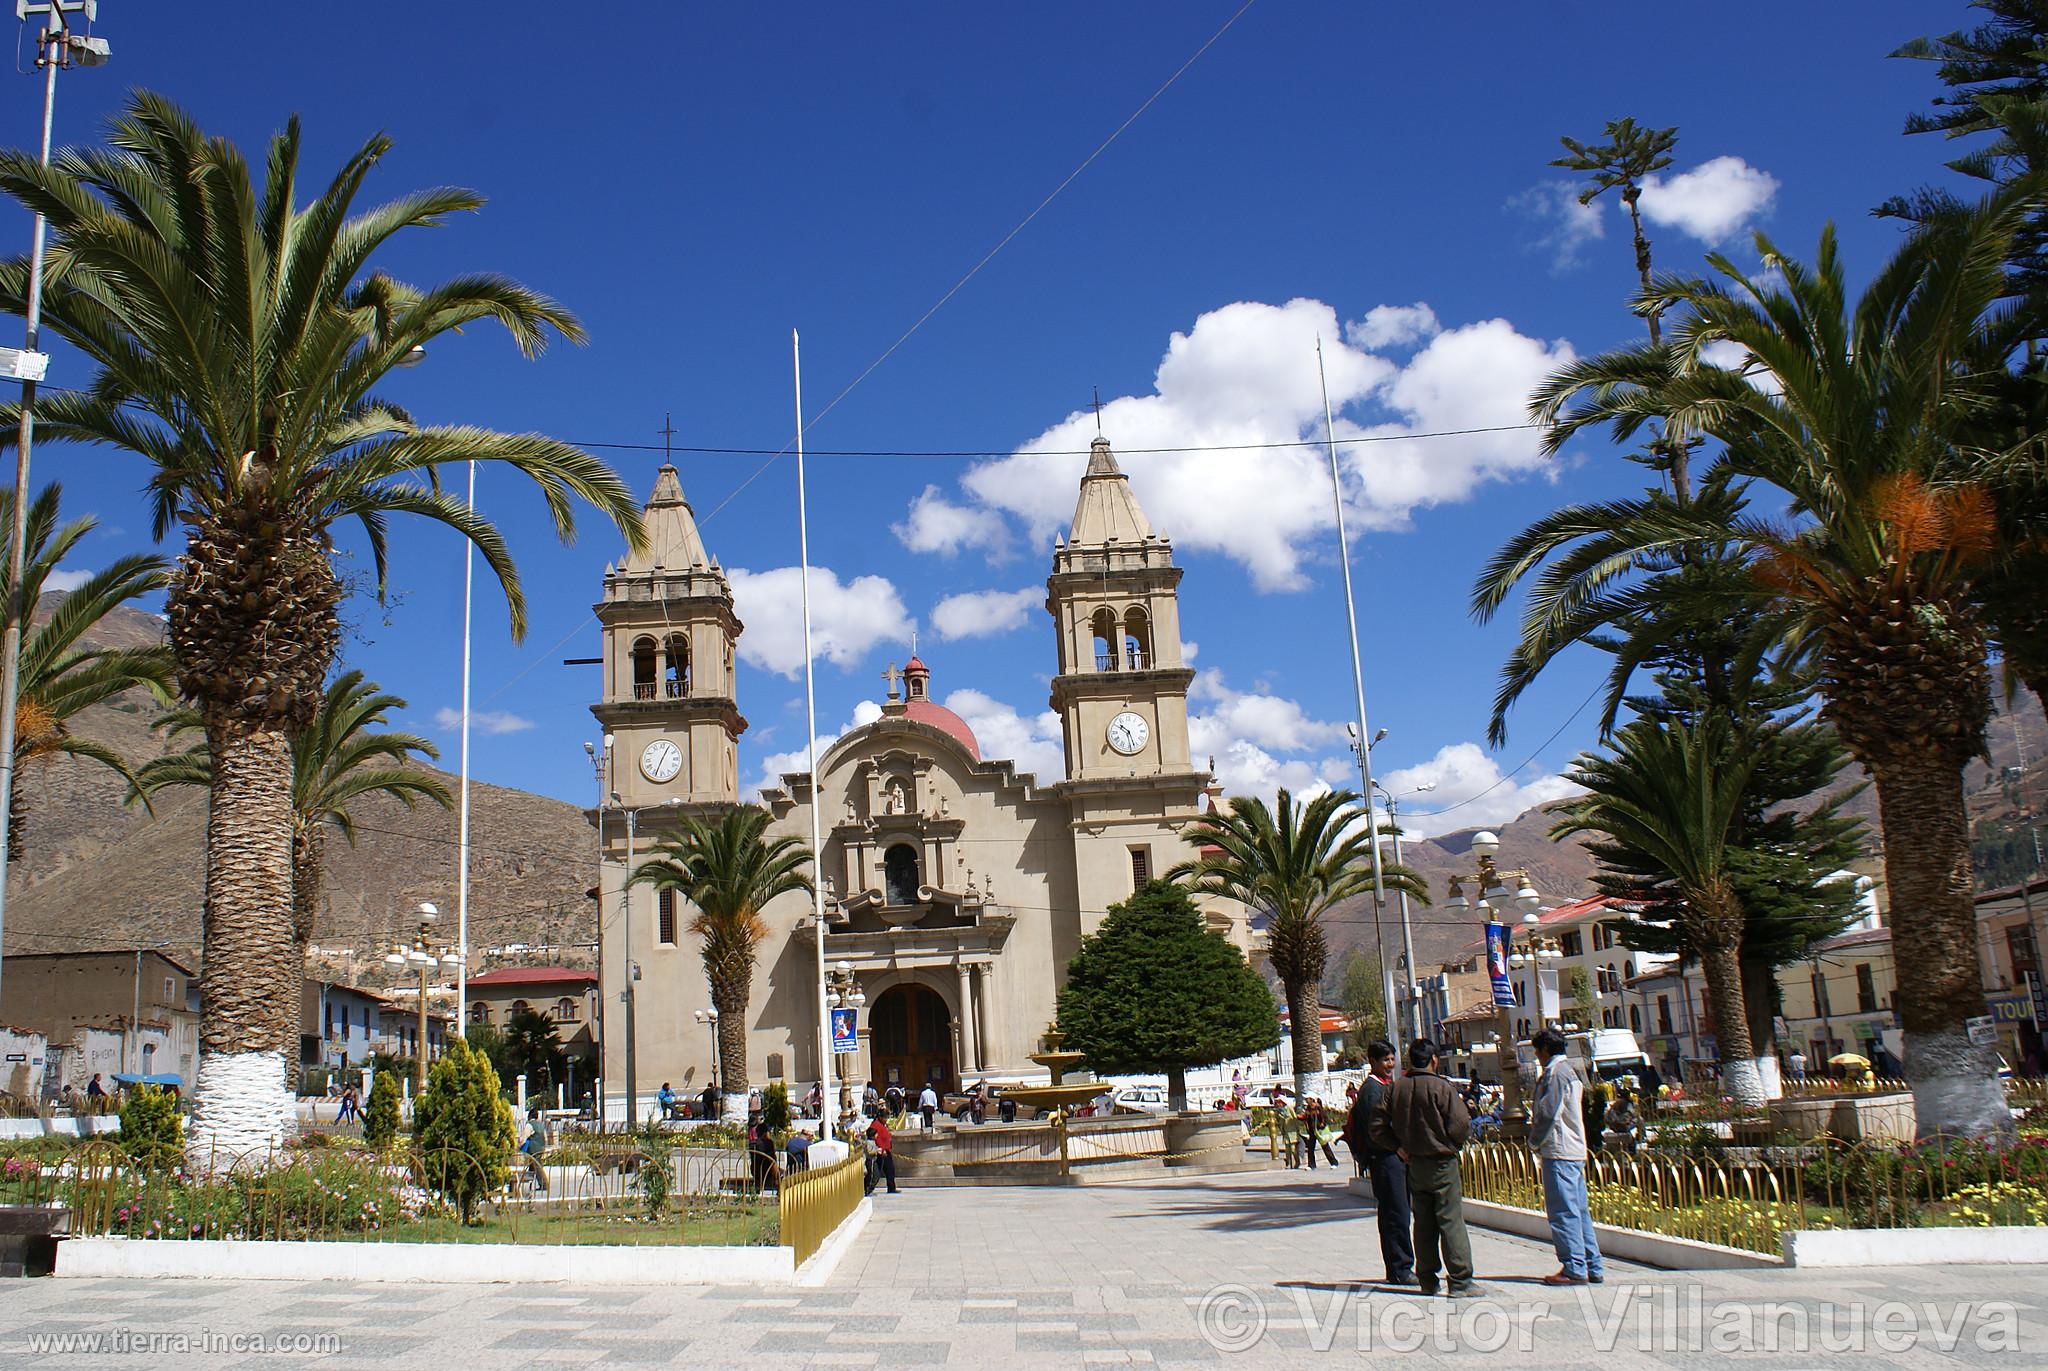 Plaza de Tarma